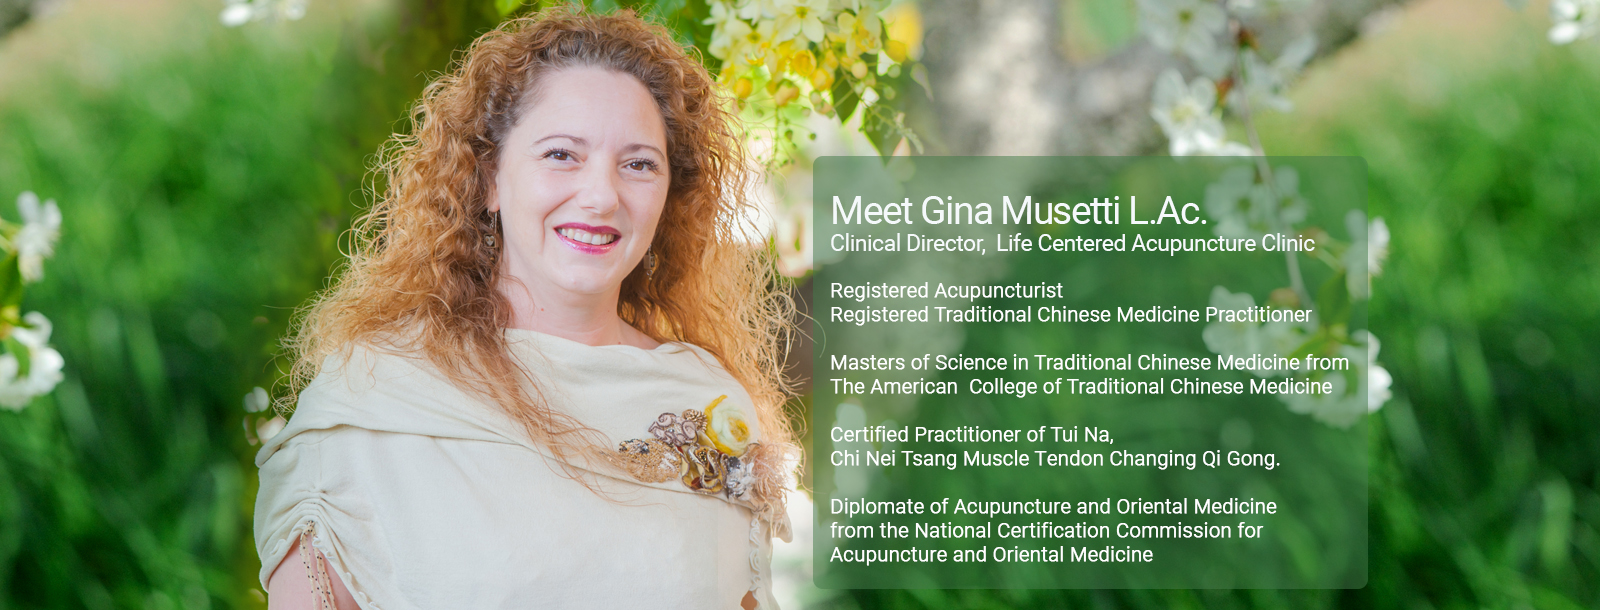 Meet Gina Musetti